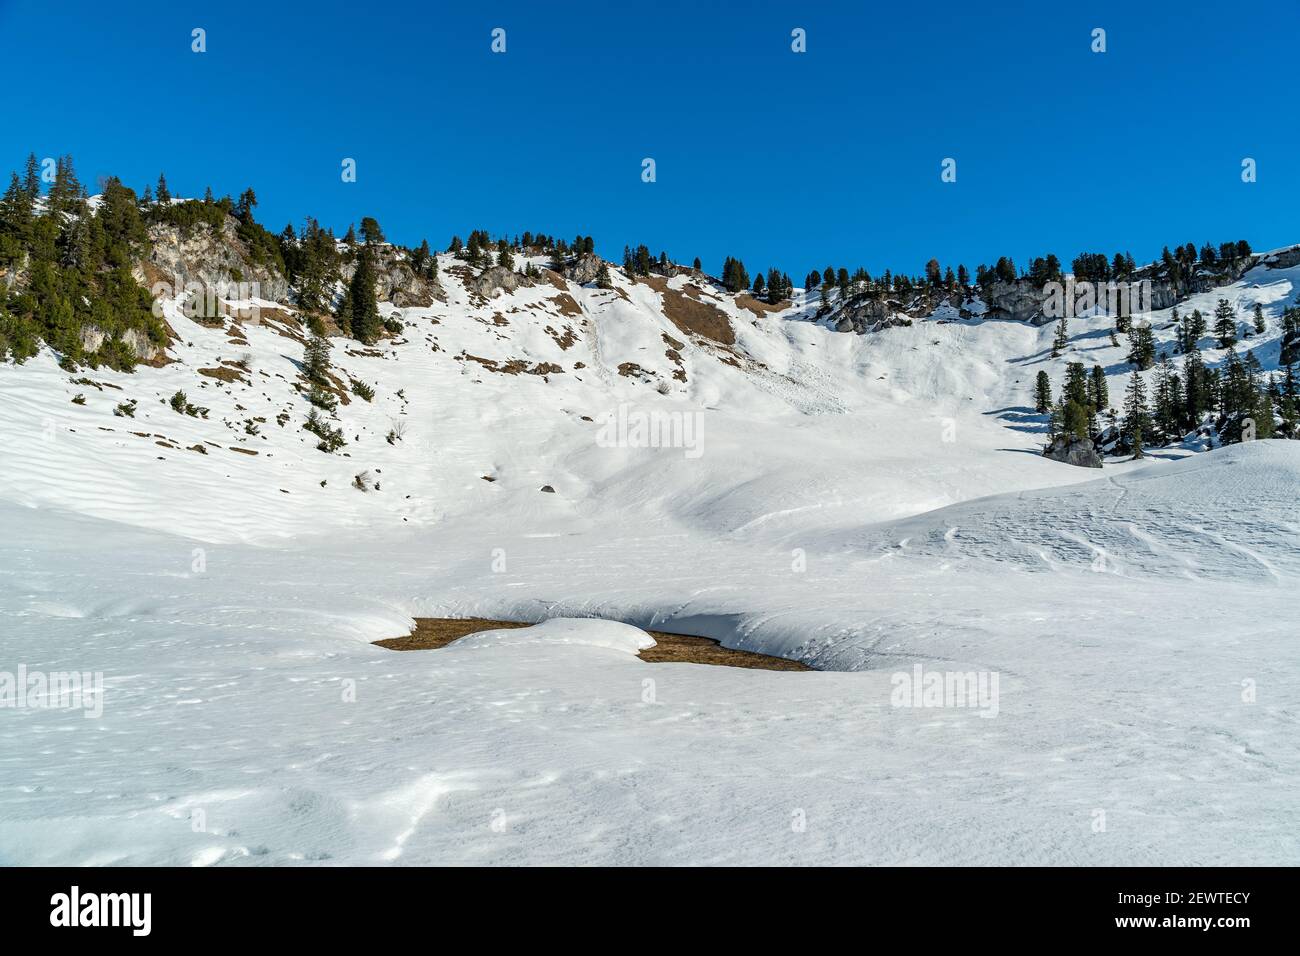 Interessante Schneeoberflächen und Formen, Bäumen und Bergen. Winterwunderland mit interessanten Schneeflächen und Formen, Bäumen und österreichischem Berg Stockfoto